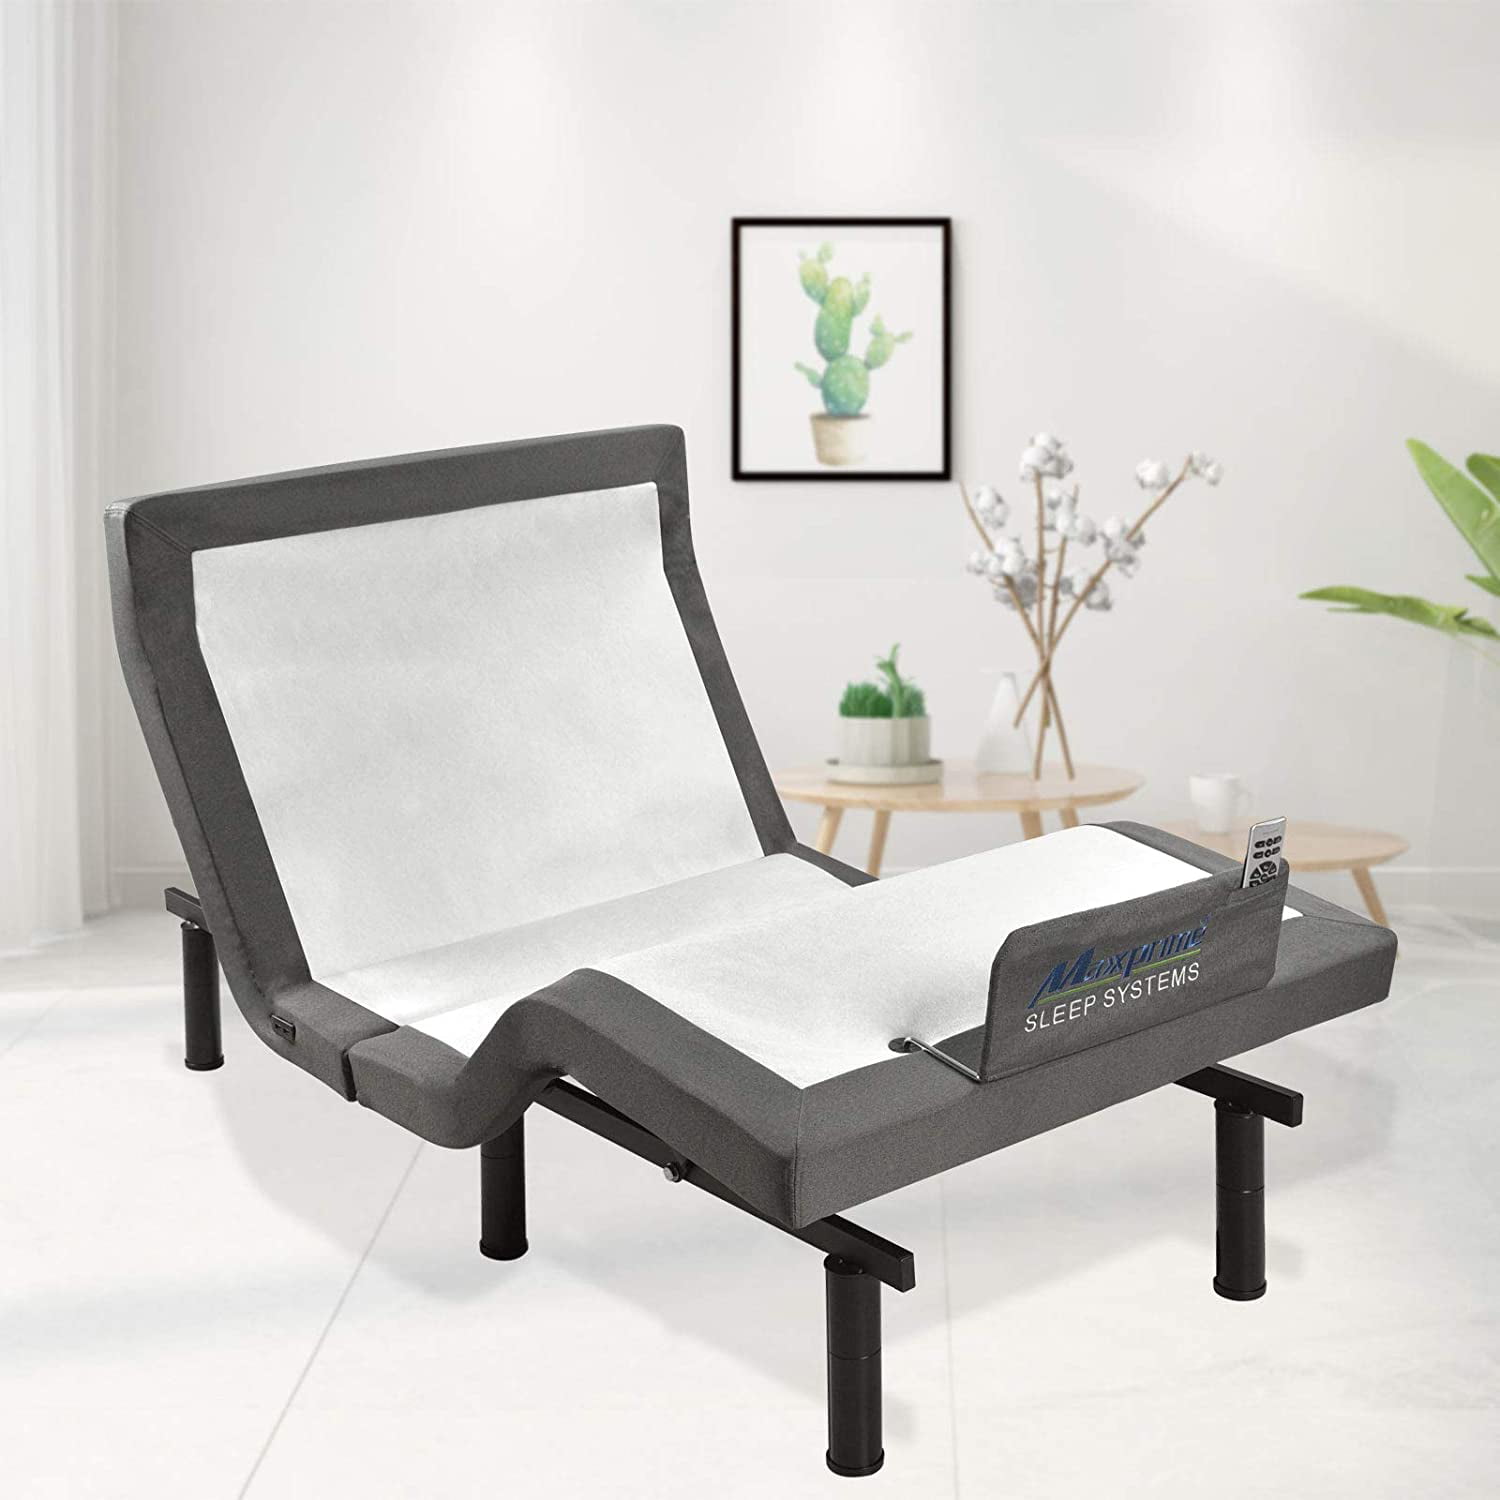 Massage Motor Adjustable Bed legget and platt 